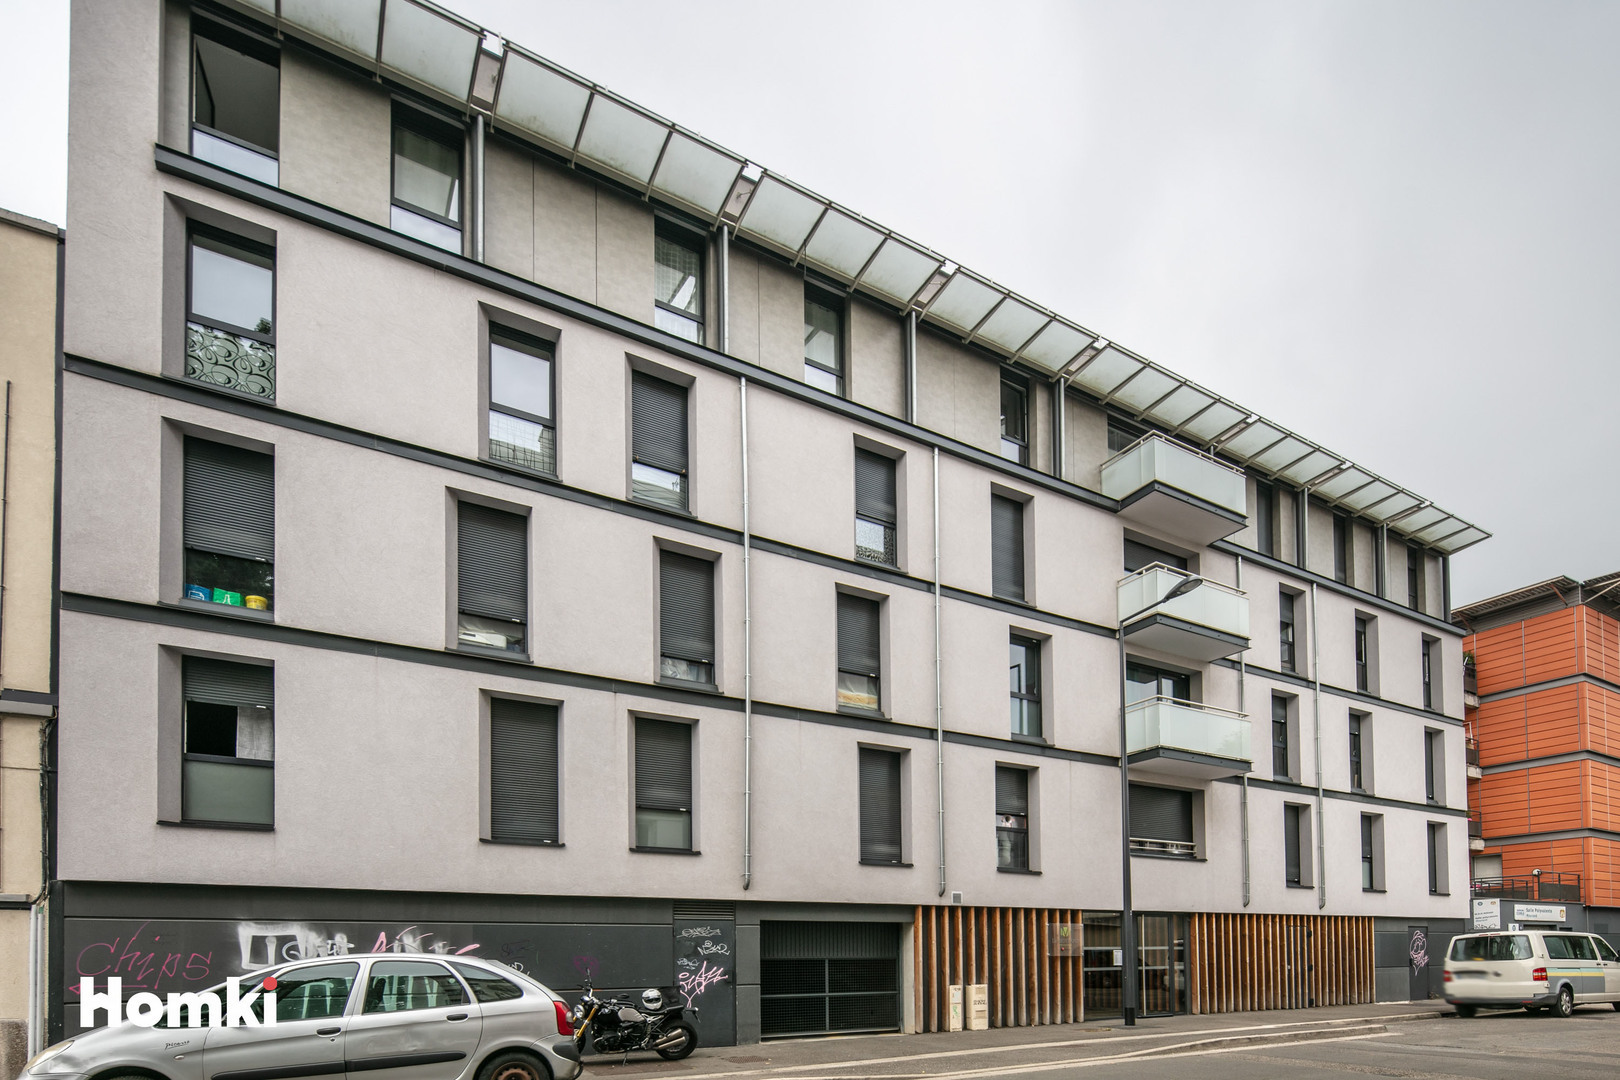 Homki - Vente Appartement  de 77.0 m² à Grenoble 38100